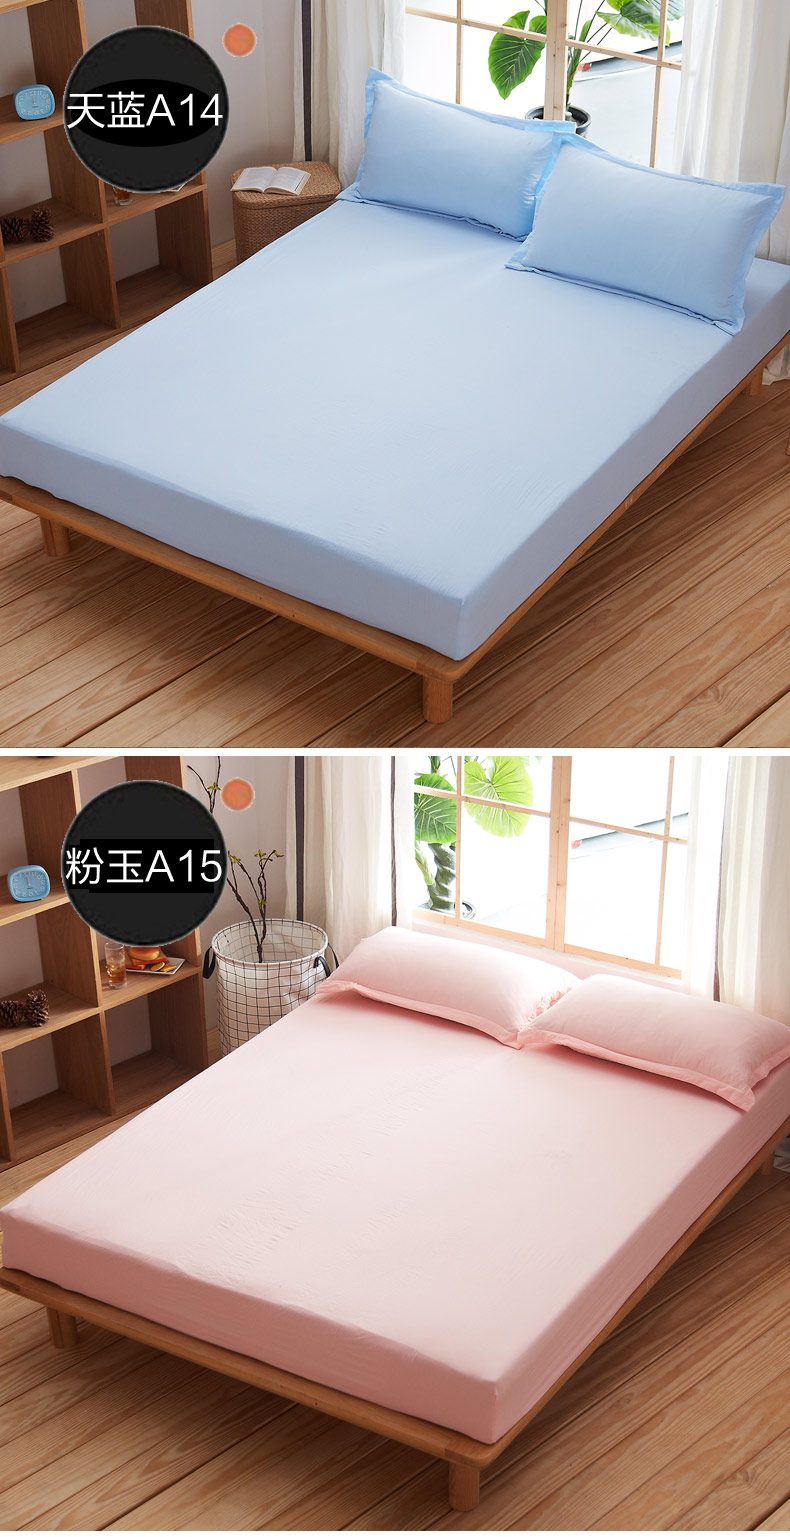 Giường, mảnh duy nhất bảo vệ bìa giường bìa giường bìa bụi che 1.5 Simmons nệm đặt mùa hè một mét tám giải phóng mặt bằng